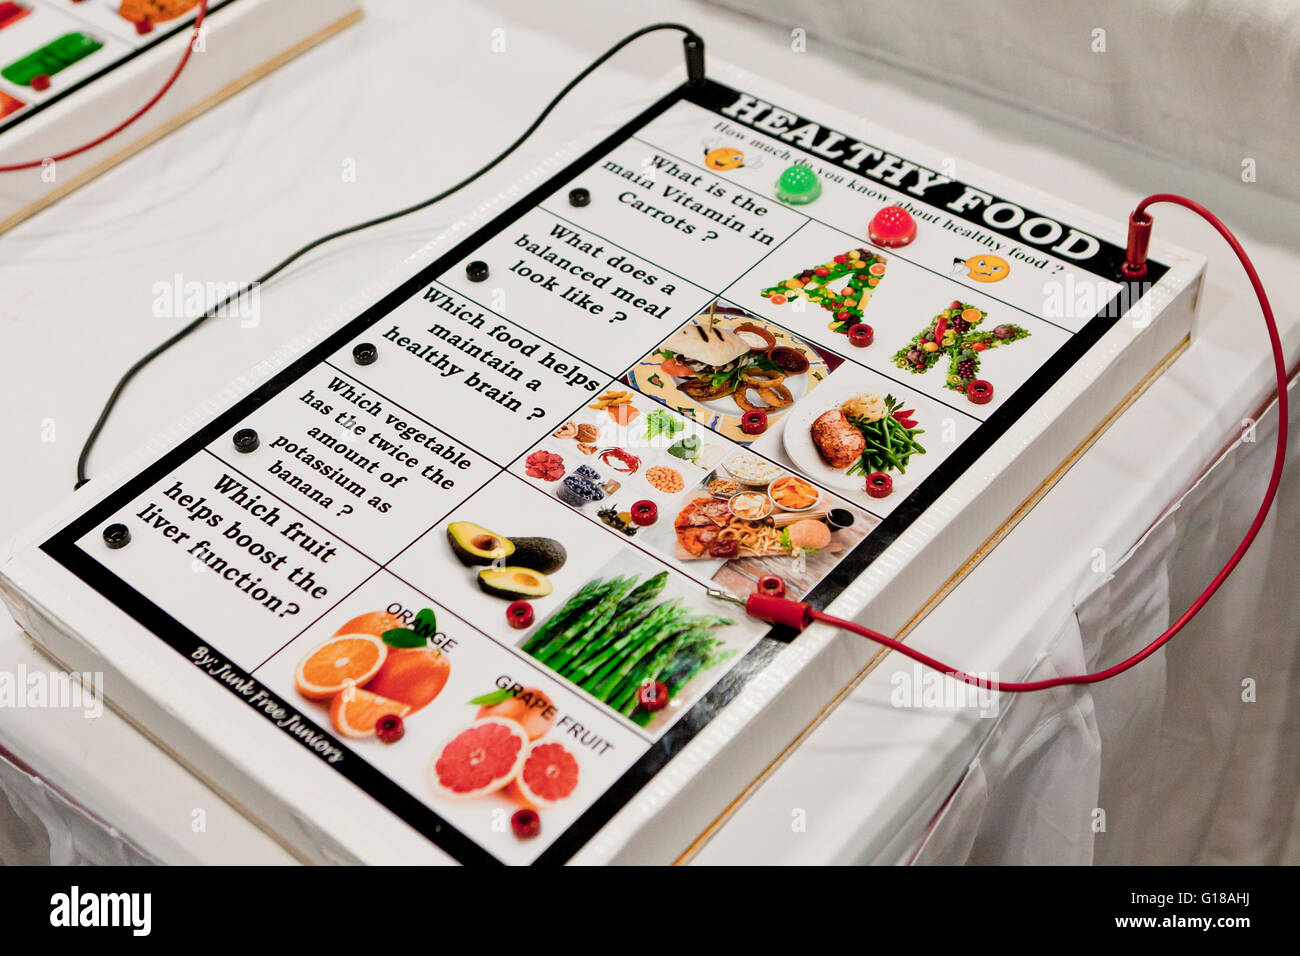 Les aliments sains de jeu réalisés par les élèves ont montré à science fair - USA Banque D'Images